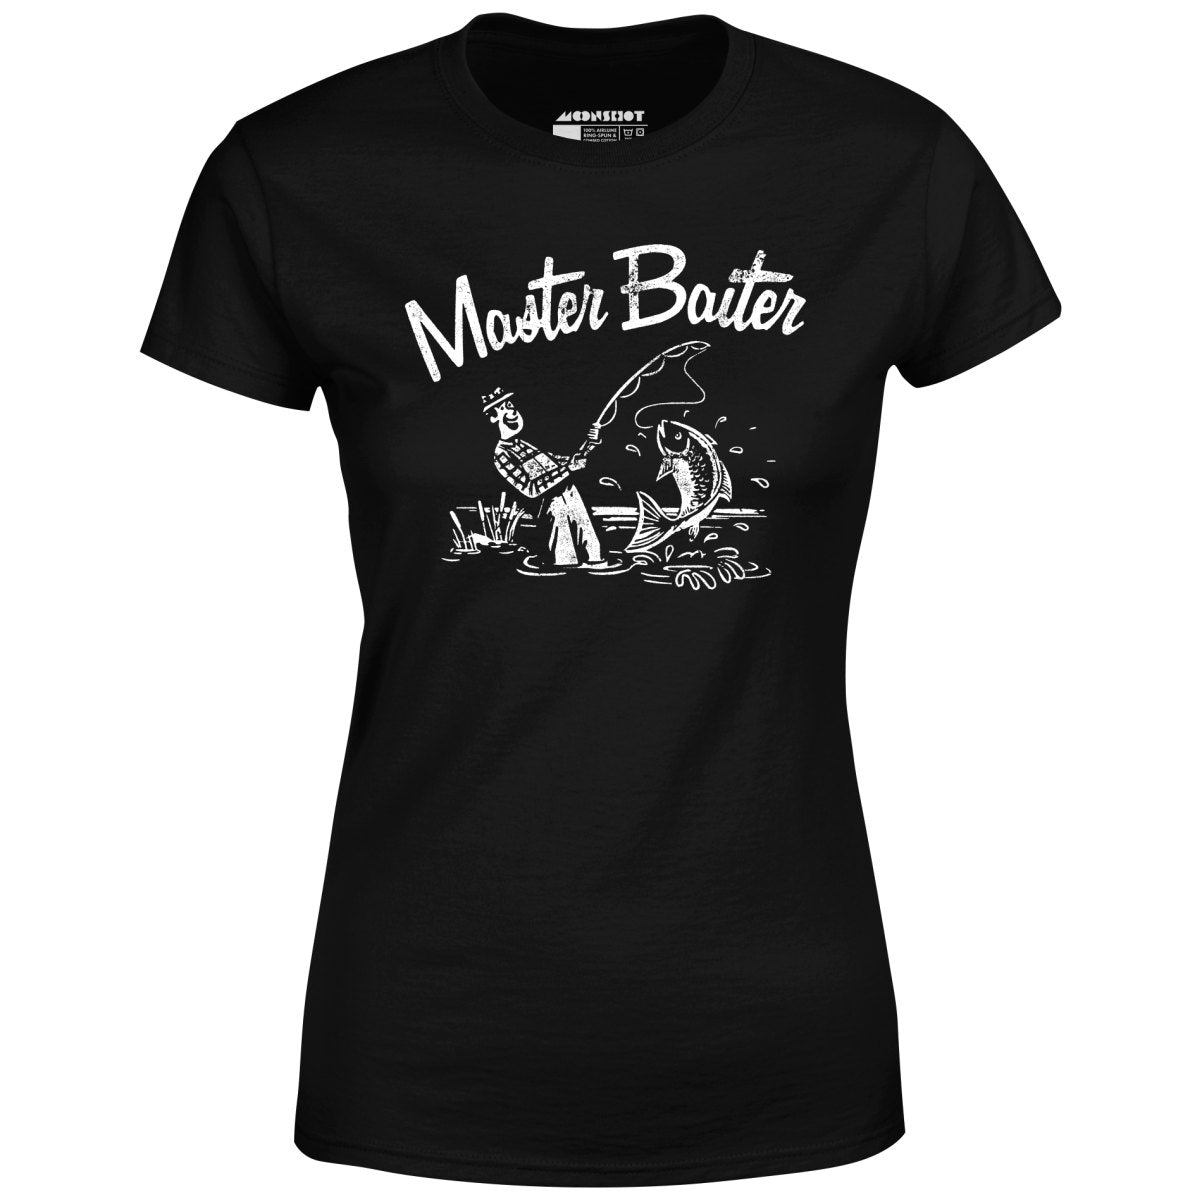 Master Baiter - Women's T-Shirt